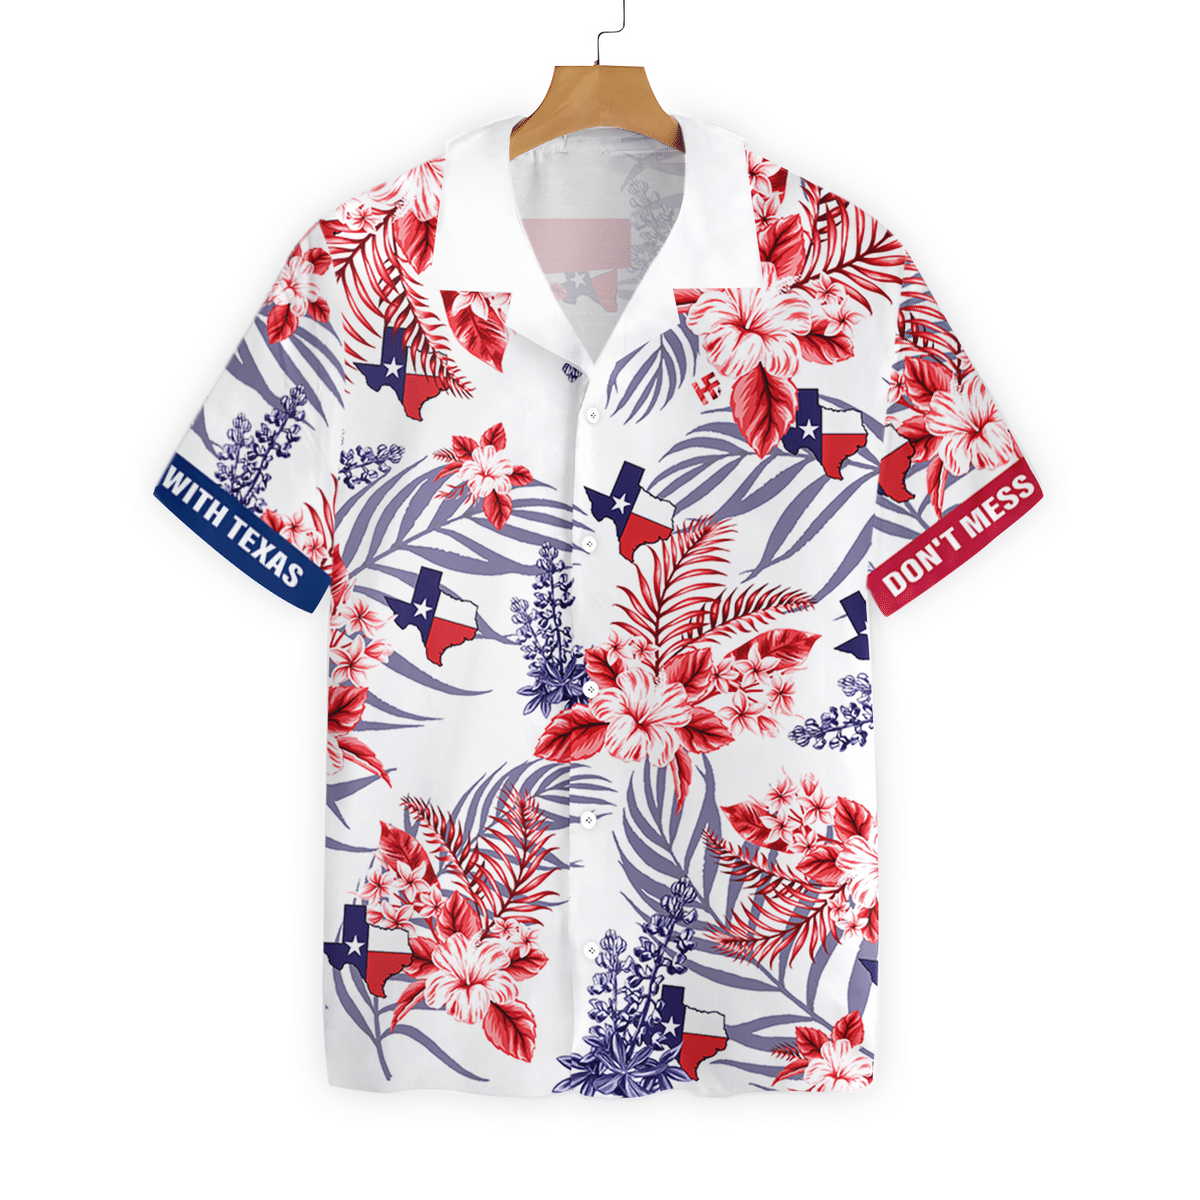 Floral Bluebonnet Dont Mess with Texas Hawaiian Shirt For Men Texas Home Shirt Proud Texas Shirt For Men